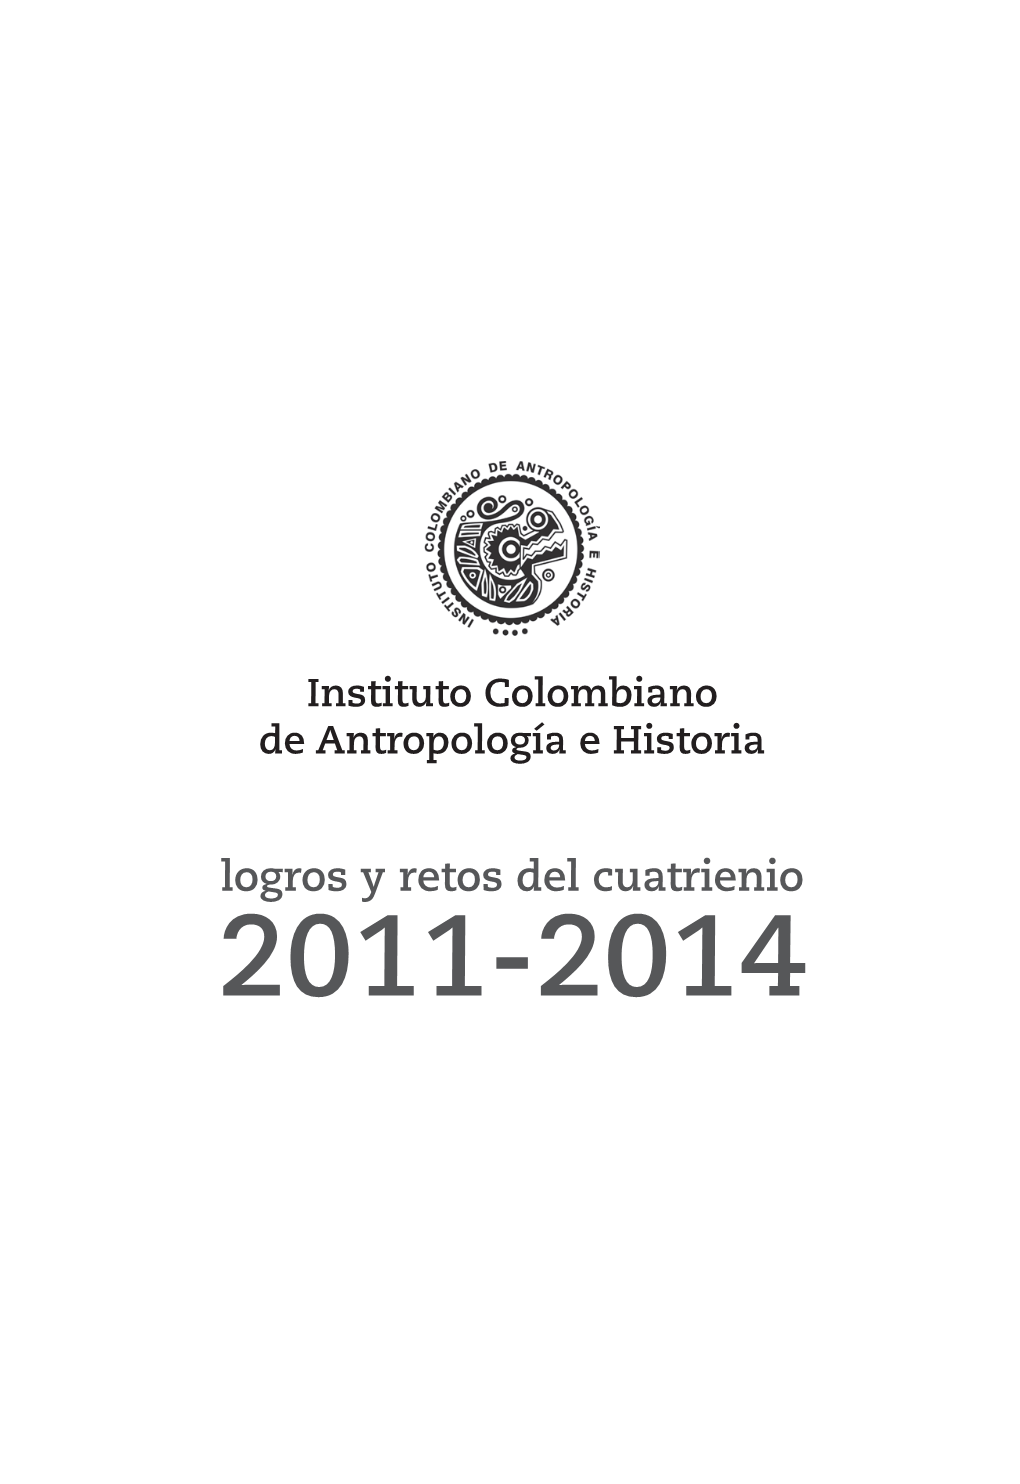 Instituto Colombiano De Antropología E Historia: Logros Y Retos Del